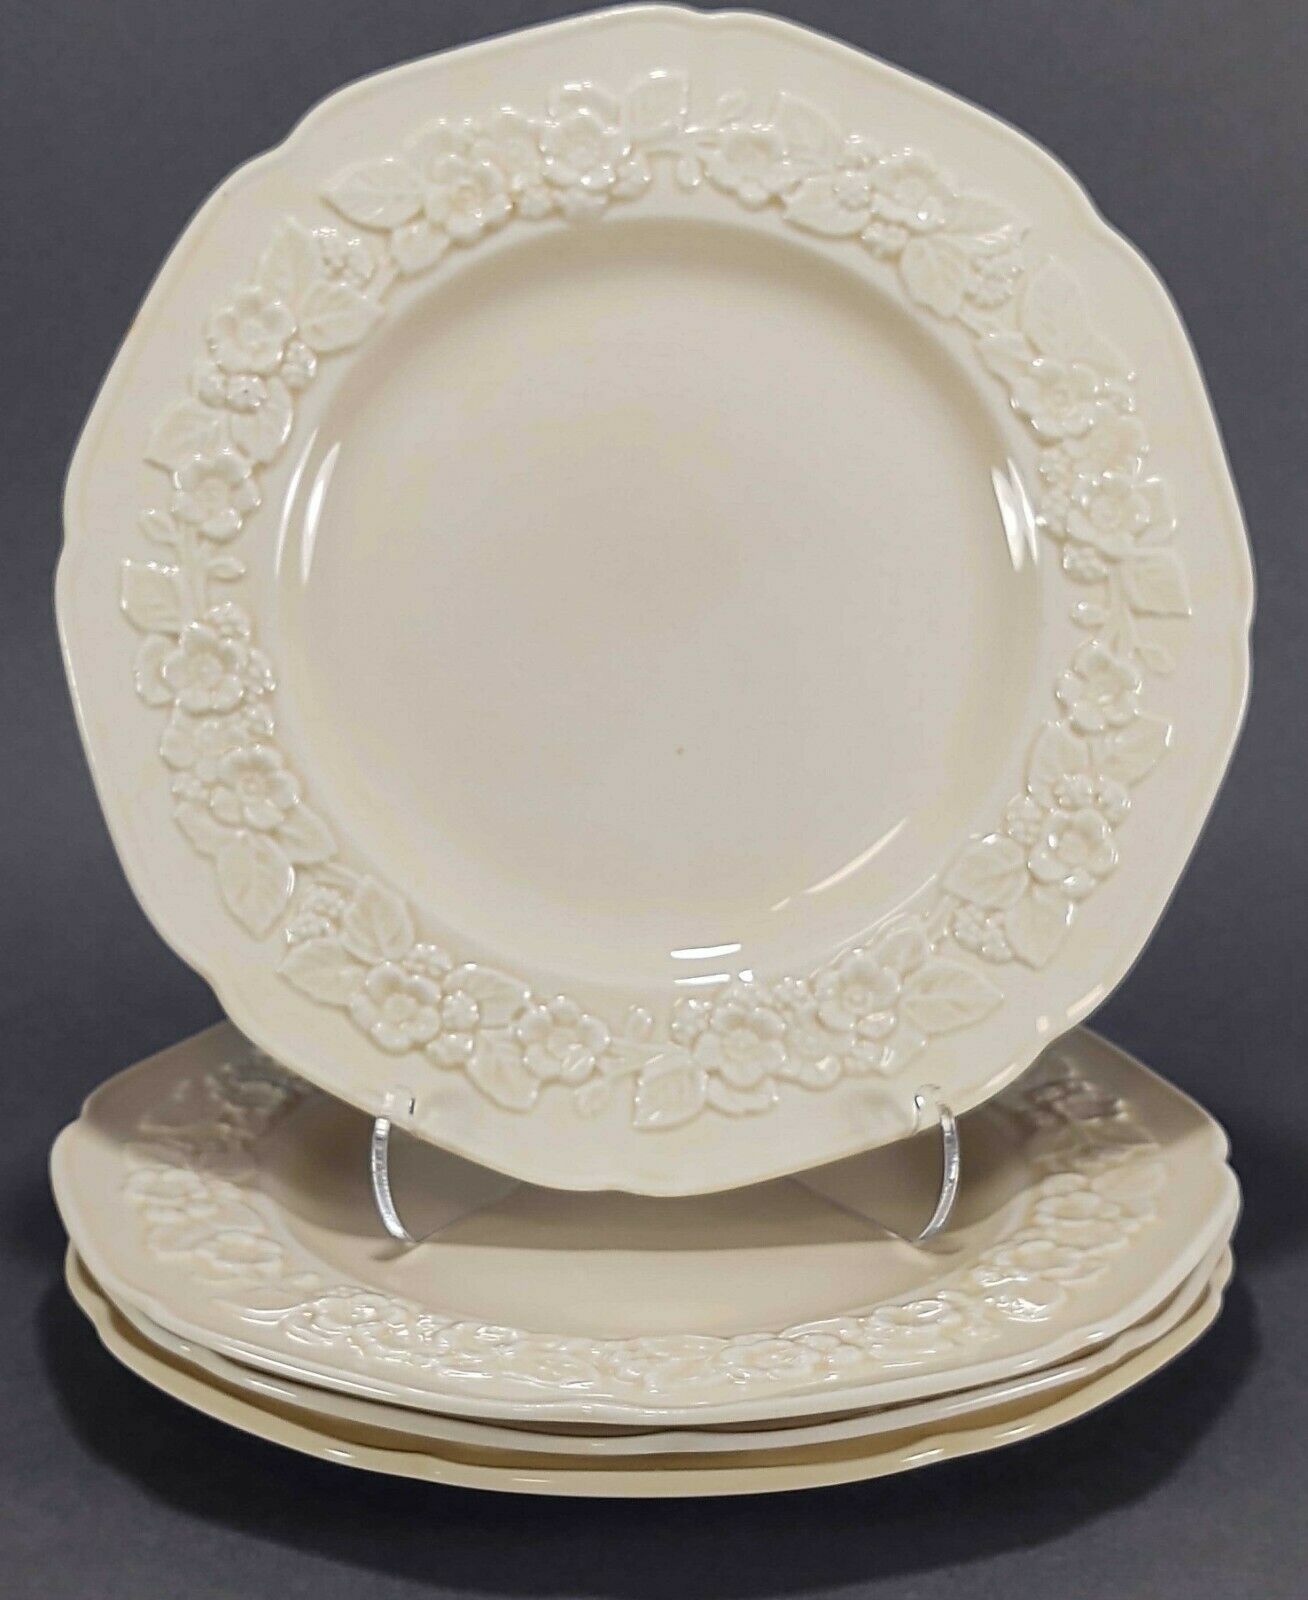 Crown Ducal Plates Gainsborough Cream Embossed Rim 7" Dessert Pie Plates Set 4